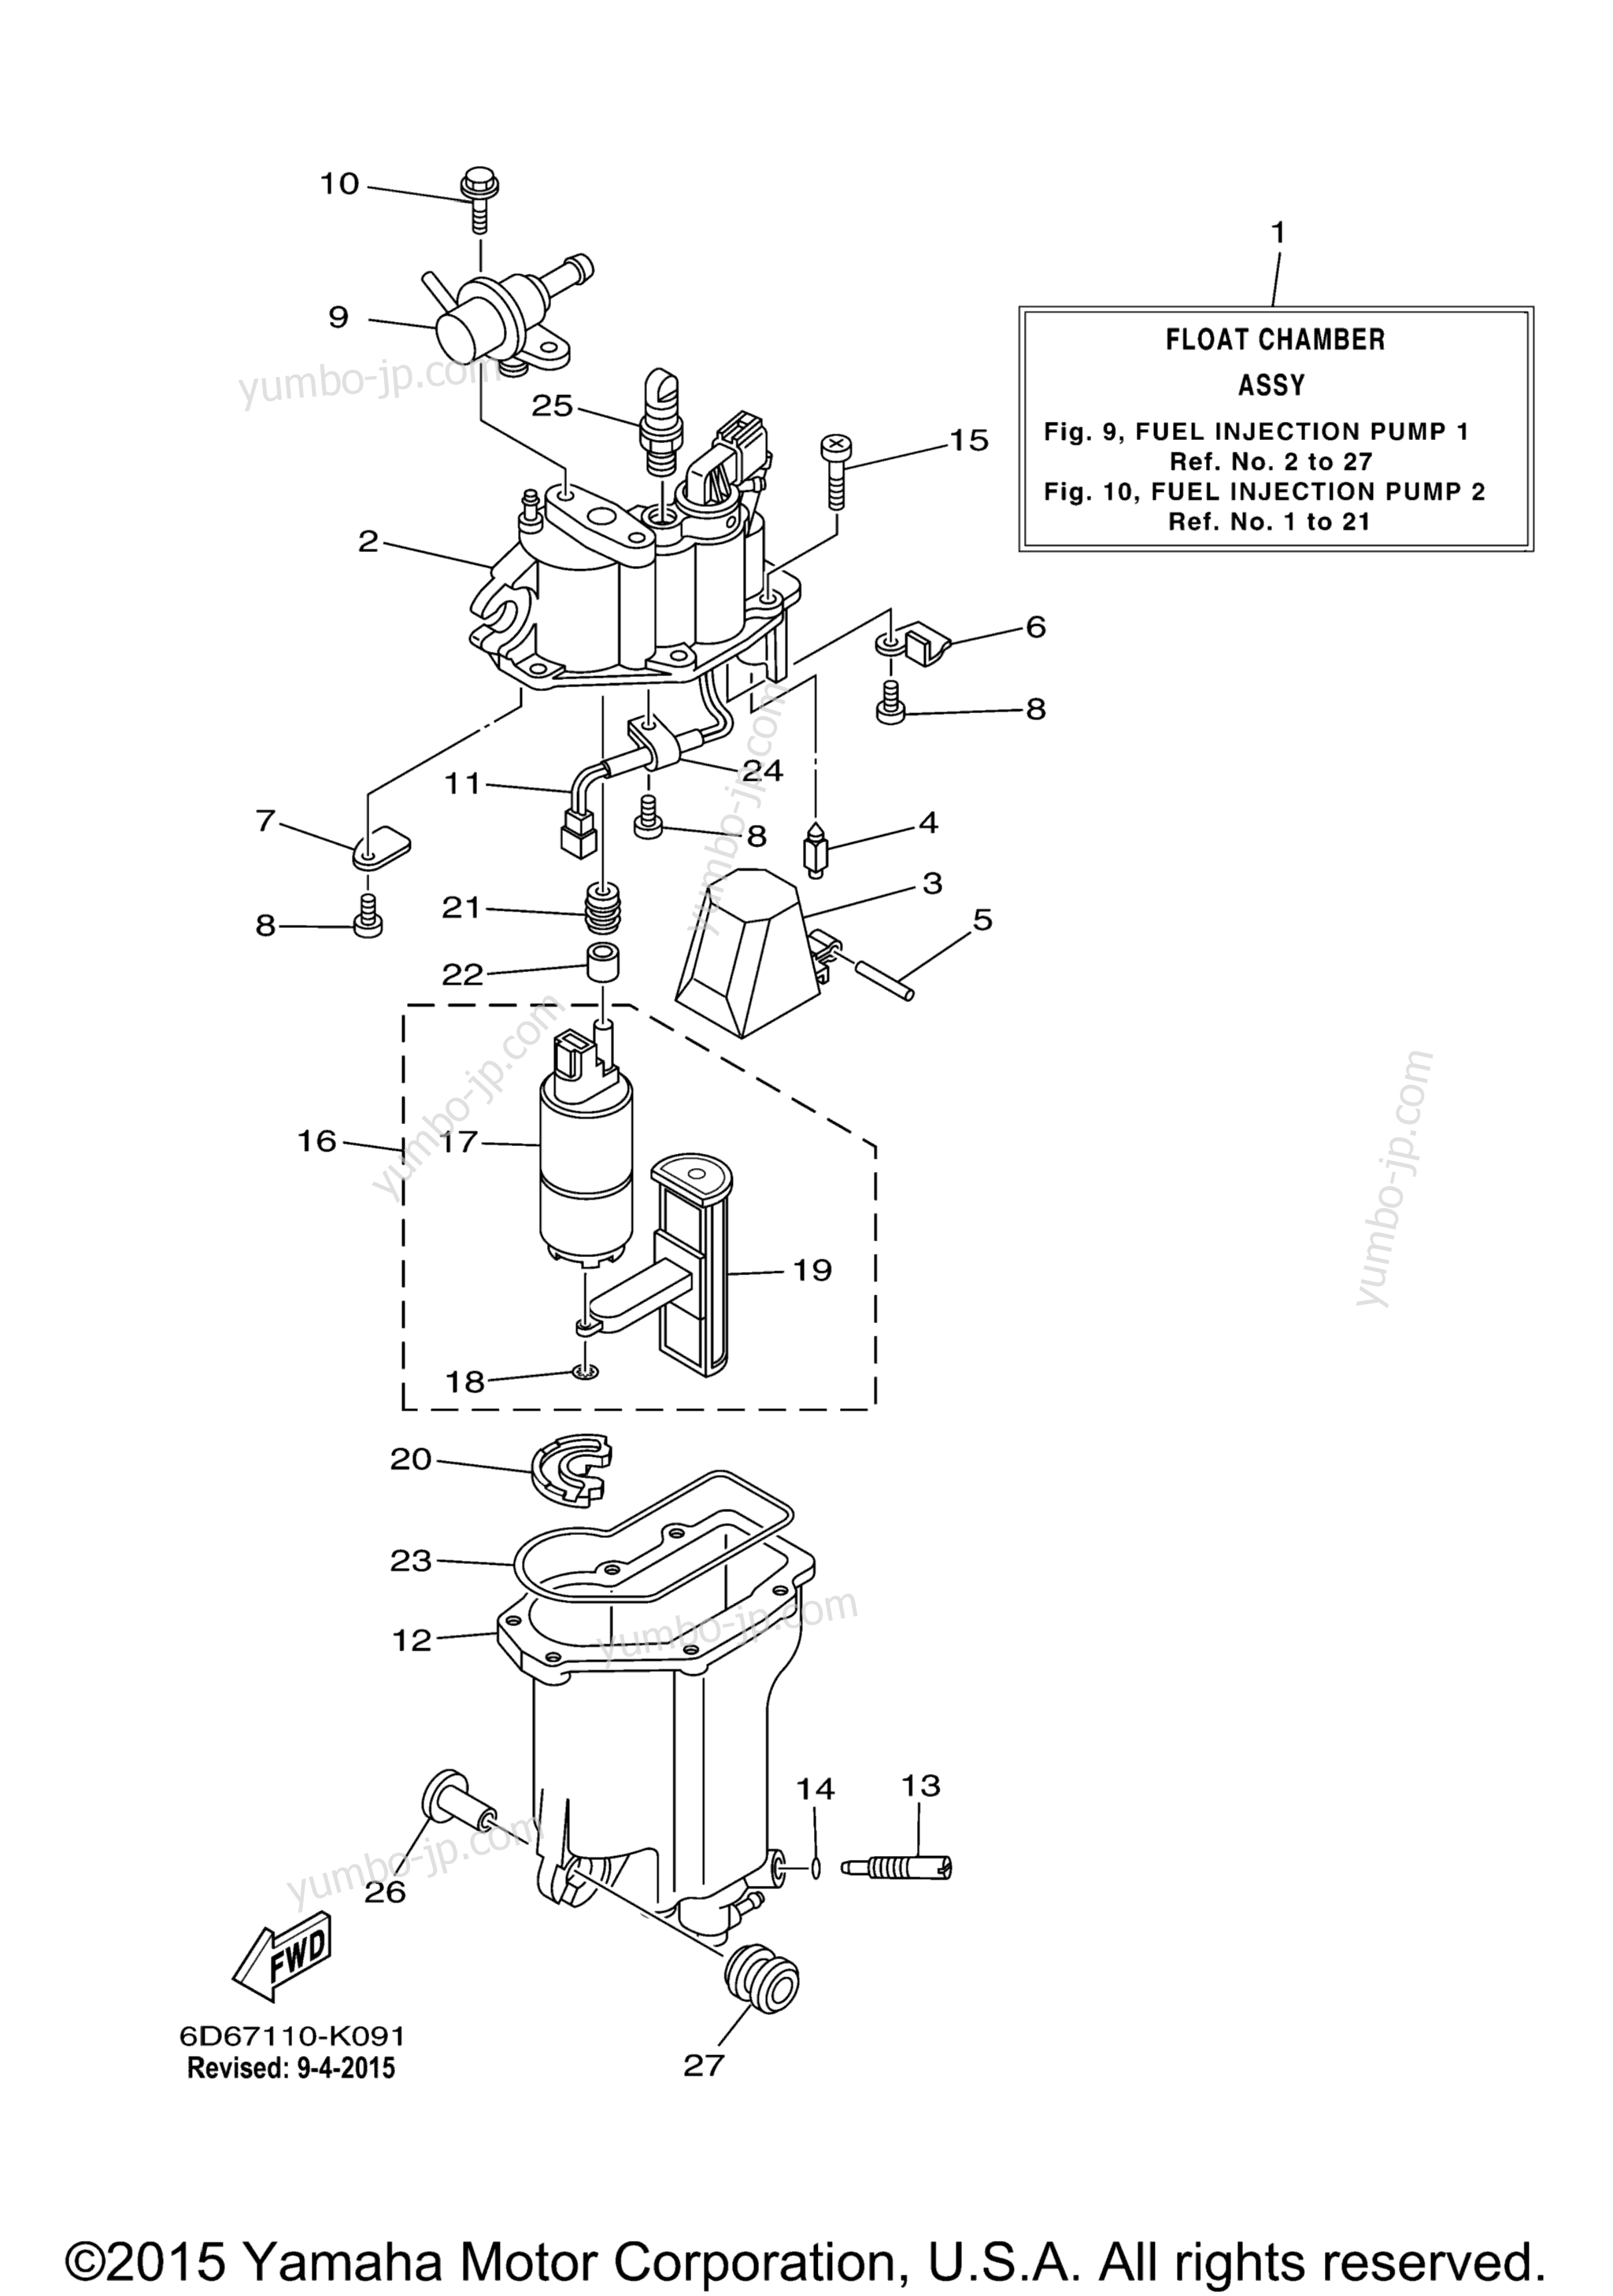 Fuel Injection Pump 1 для лодочных моторов YAMAHA F75TLR_041 (0411) 2006 г.